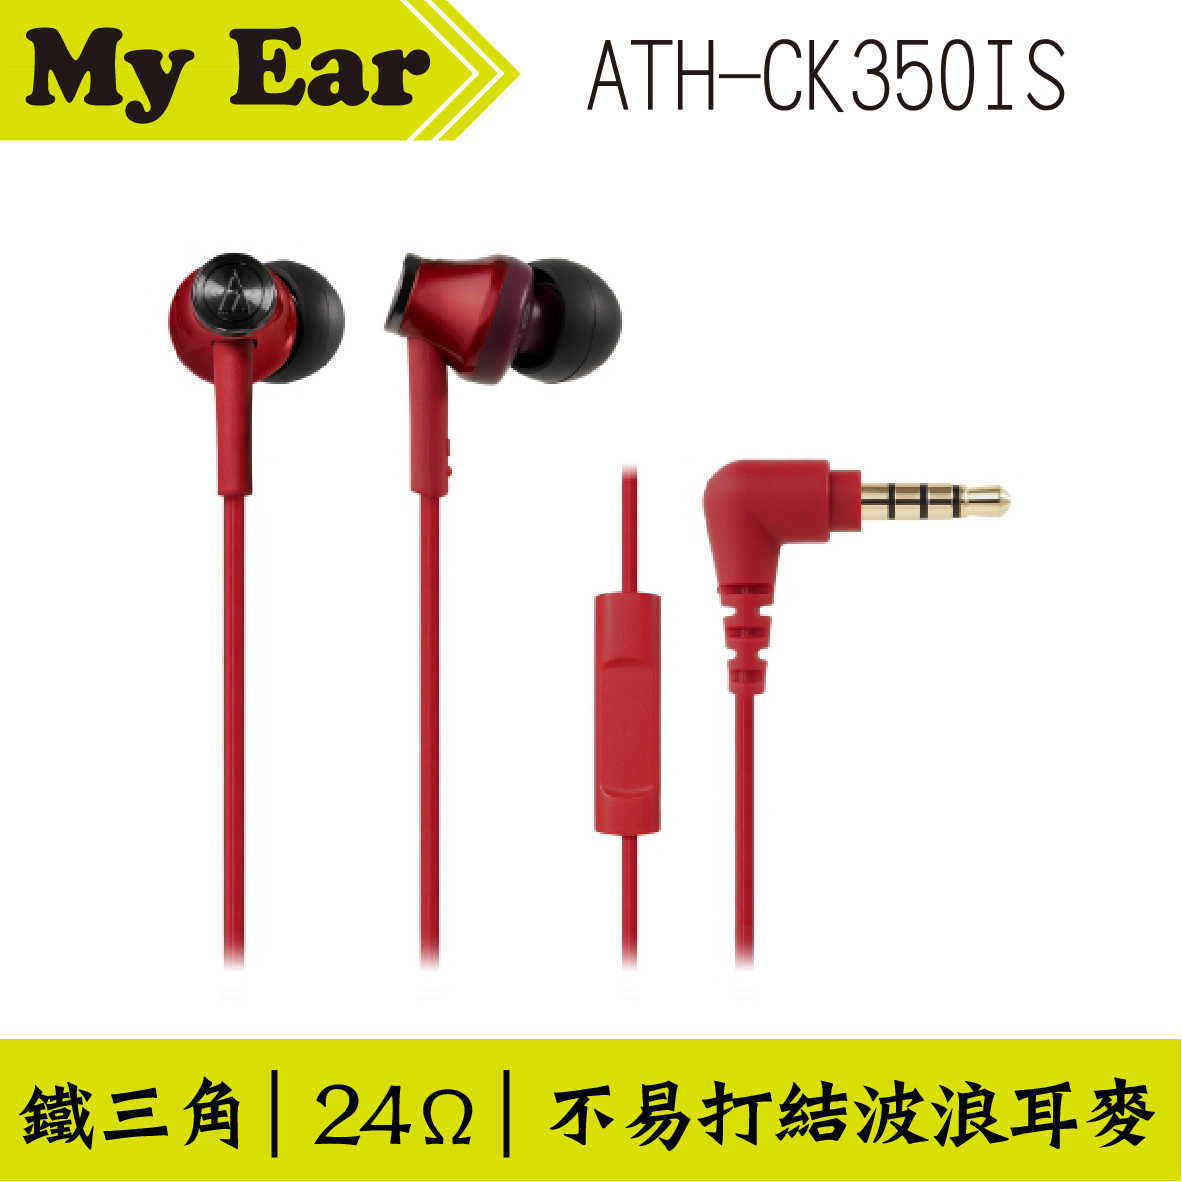 鐵三角 ATH-CK350IS 耳機麥克風 粉紅色  | My Ear 耳機專門店